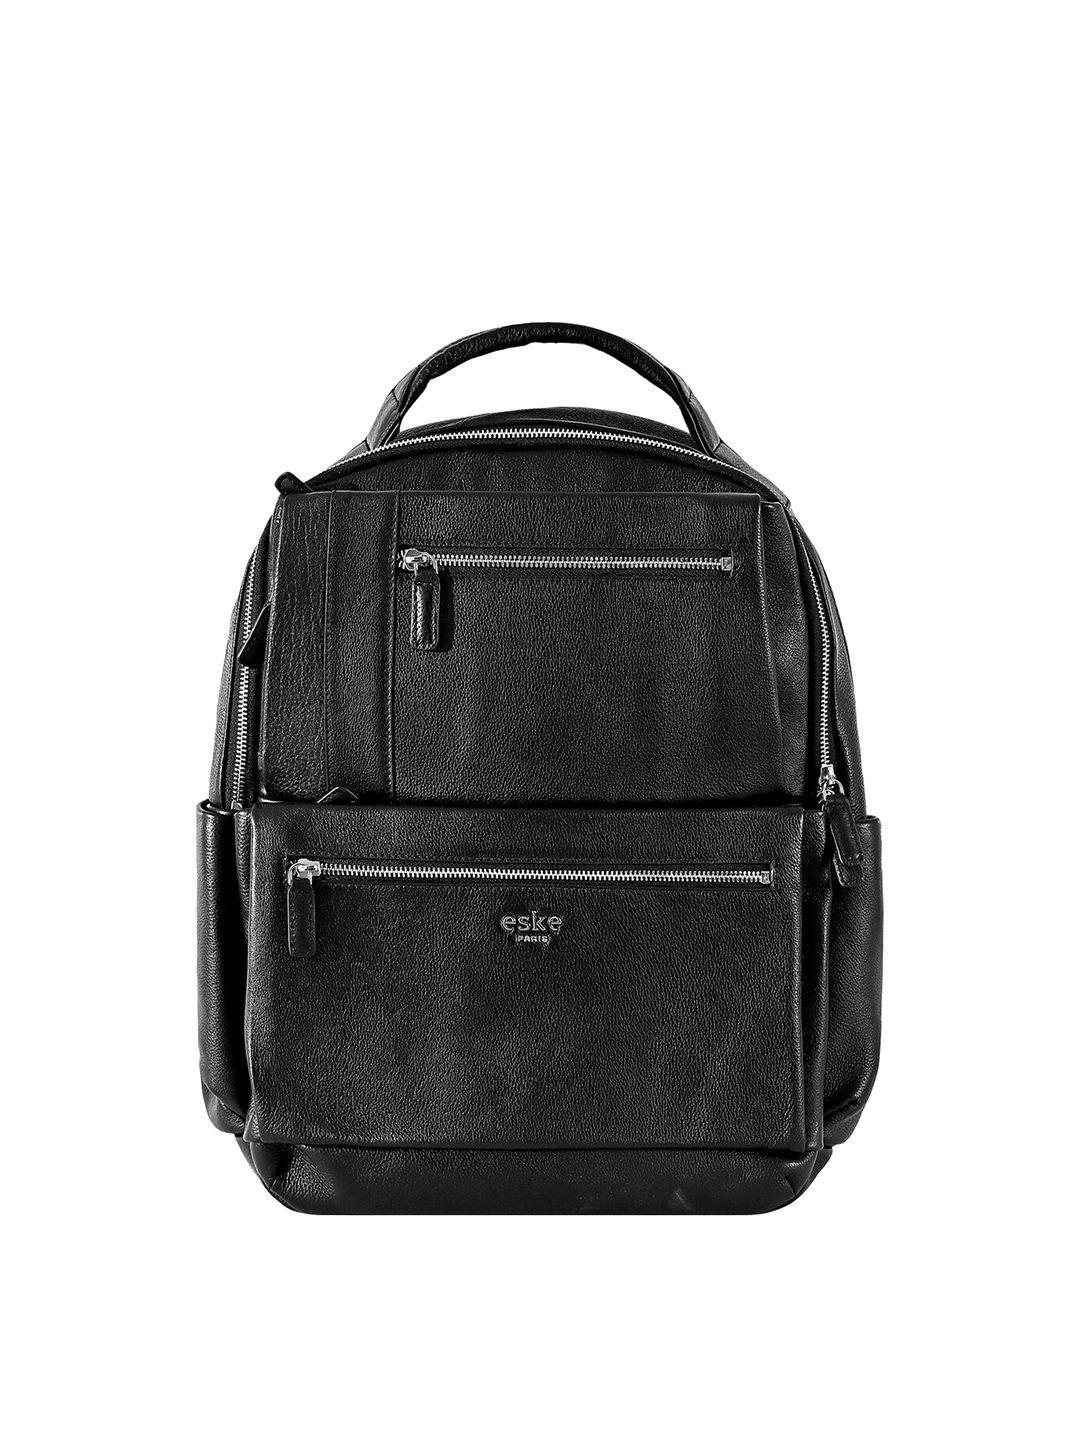 eske unisex black backpack with compression straps